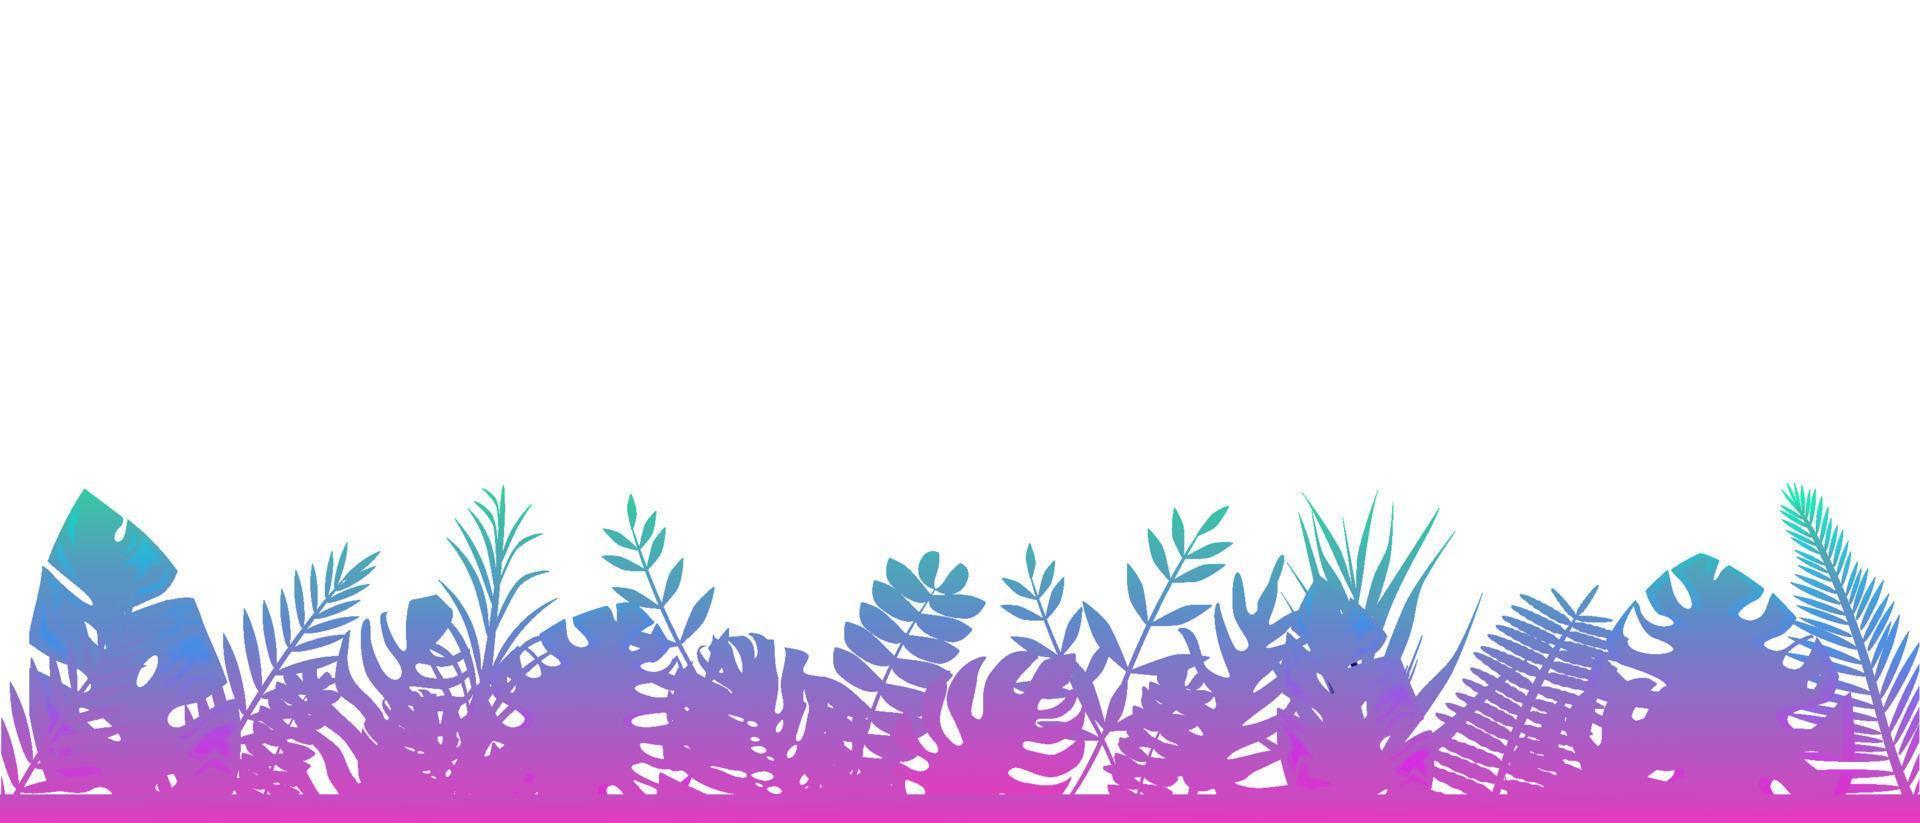 fondo de helecho rosa azul. decoración horizontal selva tropical fondo botánico floral con elegantes hojas tiernas de helecho césped natural salvaje en los rayos del sol vector naciente.